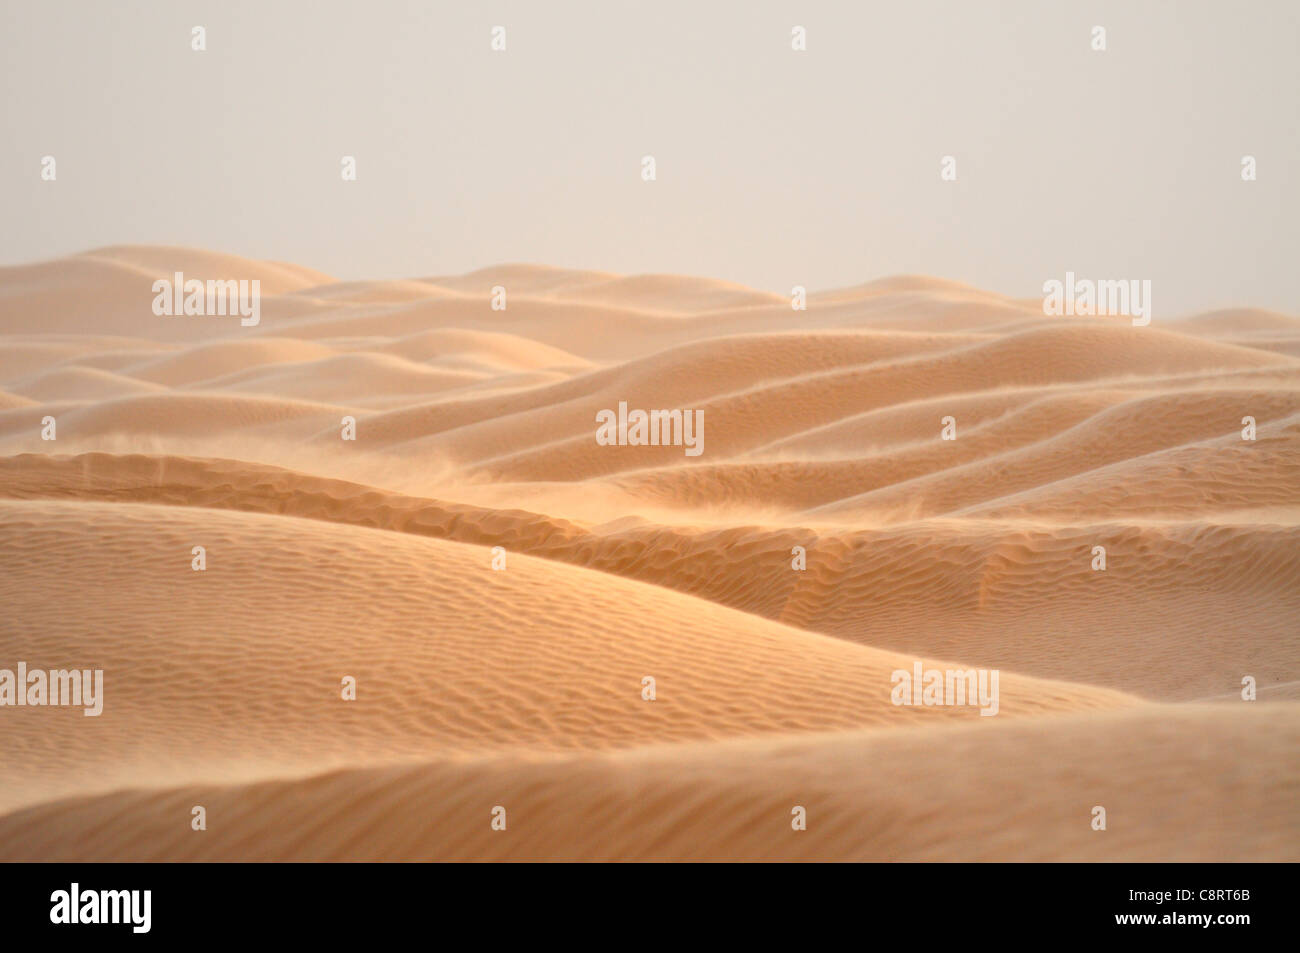 Afrika, Tunesien, nr. Ksar Rhilane. Sandsturm in den Dünen im Westen von Ksar Ghilane am östlichen Rand des Grand Erg Stockfoto